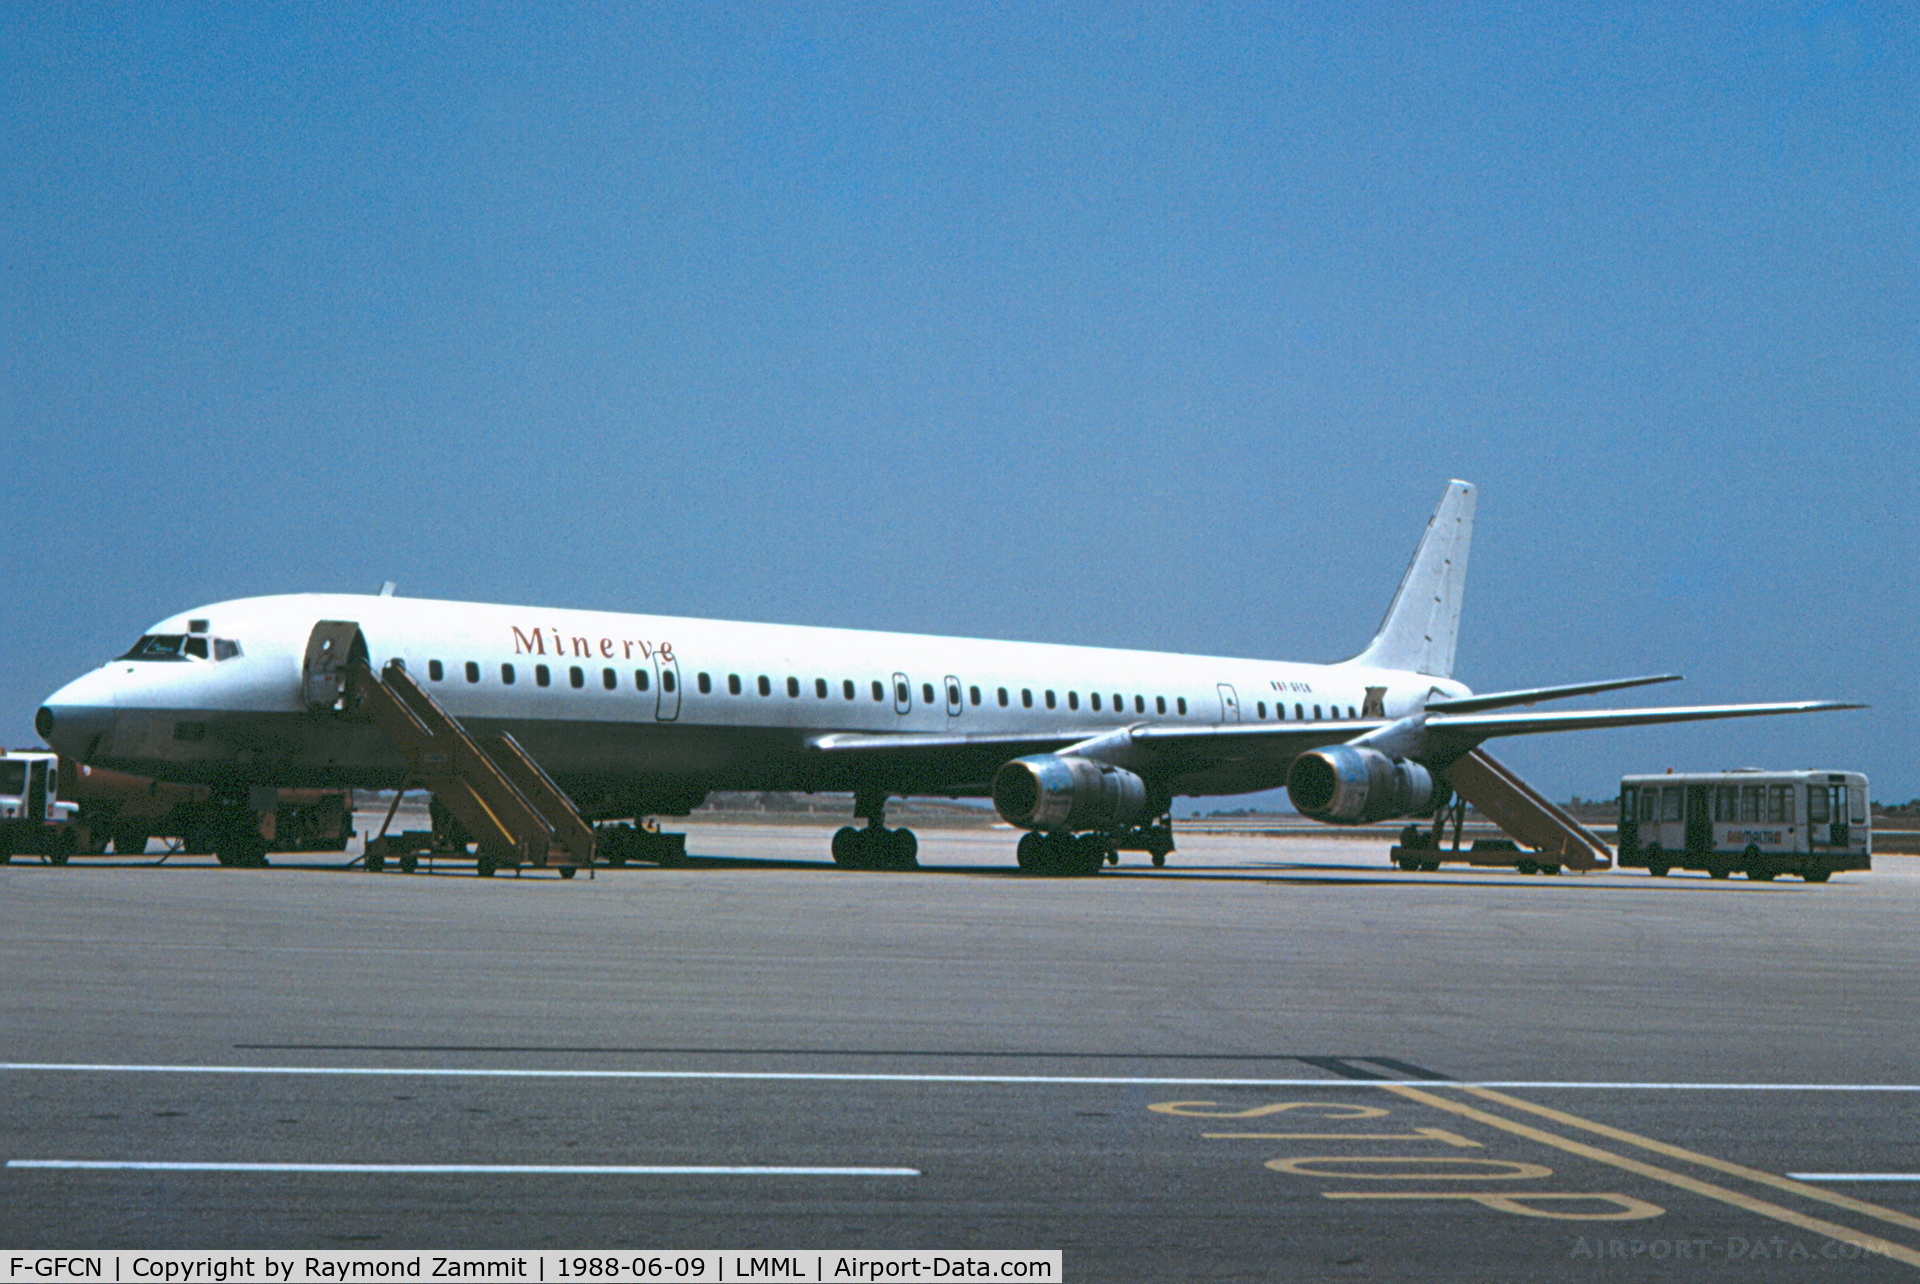 F-GFCN, 1971 Douglas DC-8-61 C/N 46159, DC-8 F-GFCN Minerve